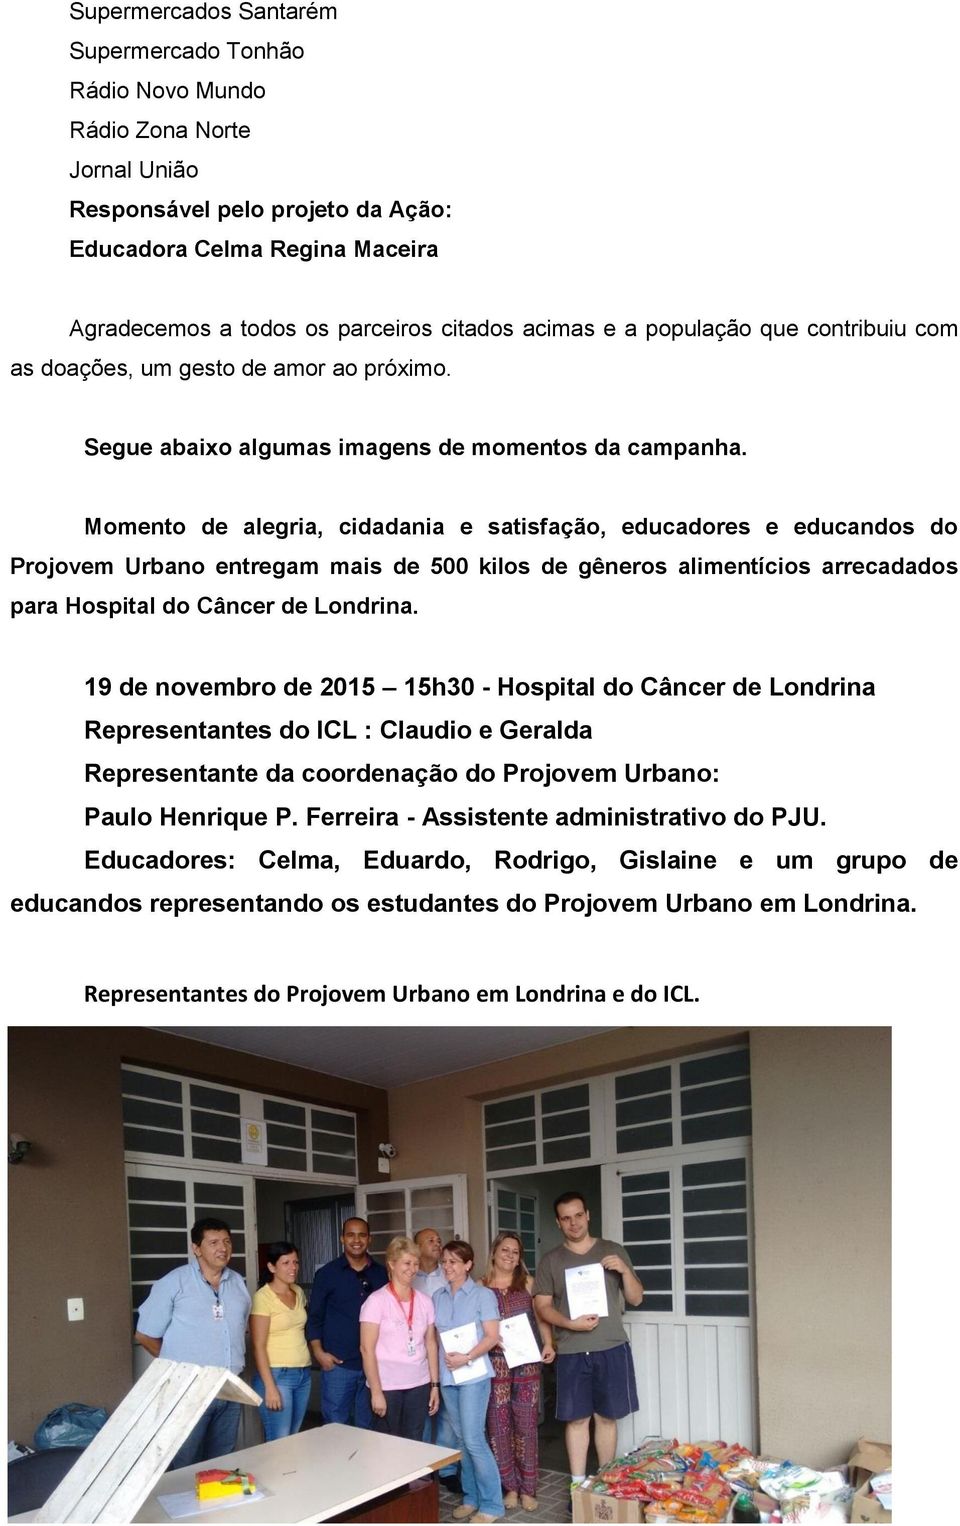 Momento de alegria, cidadania e satisfação, educadores e educandos do Projovem Urbano entregam mais de 500 kilos de gêneros alimentícios arrecadados para Hospital do Câncer de Londrina.